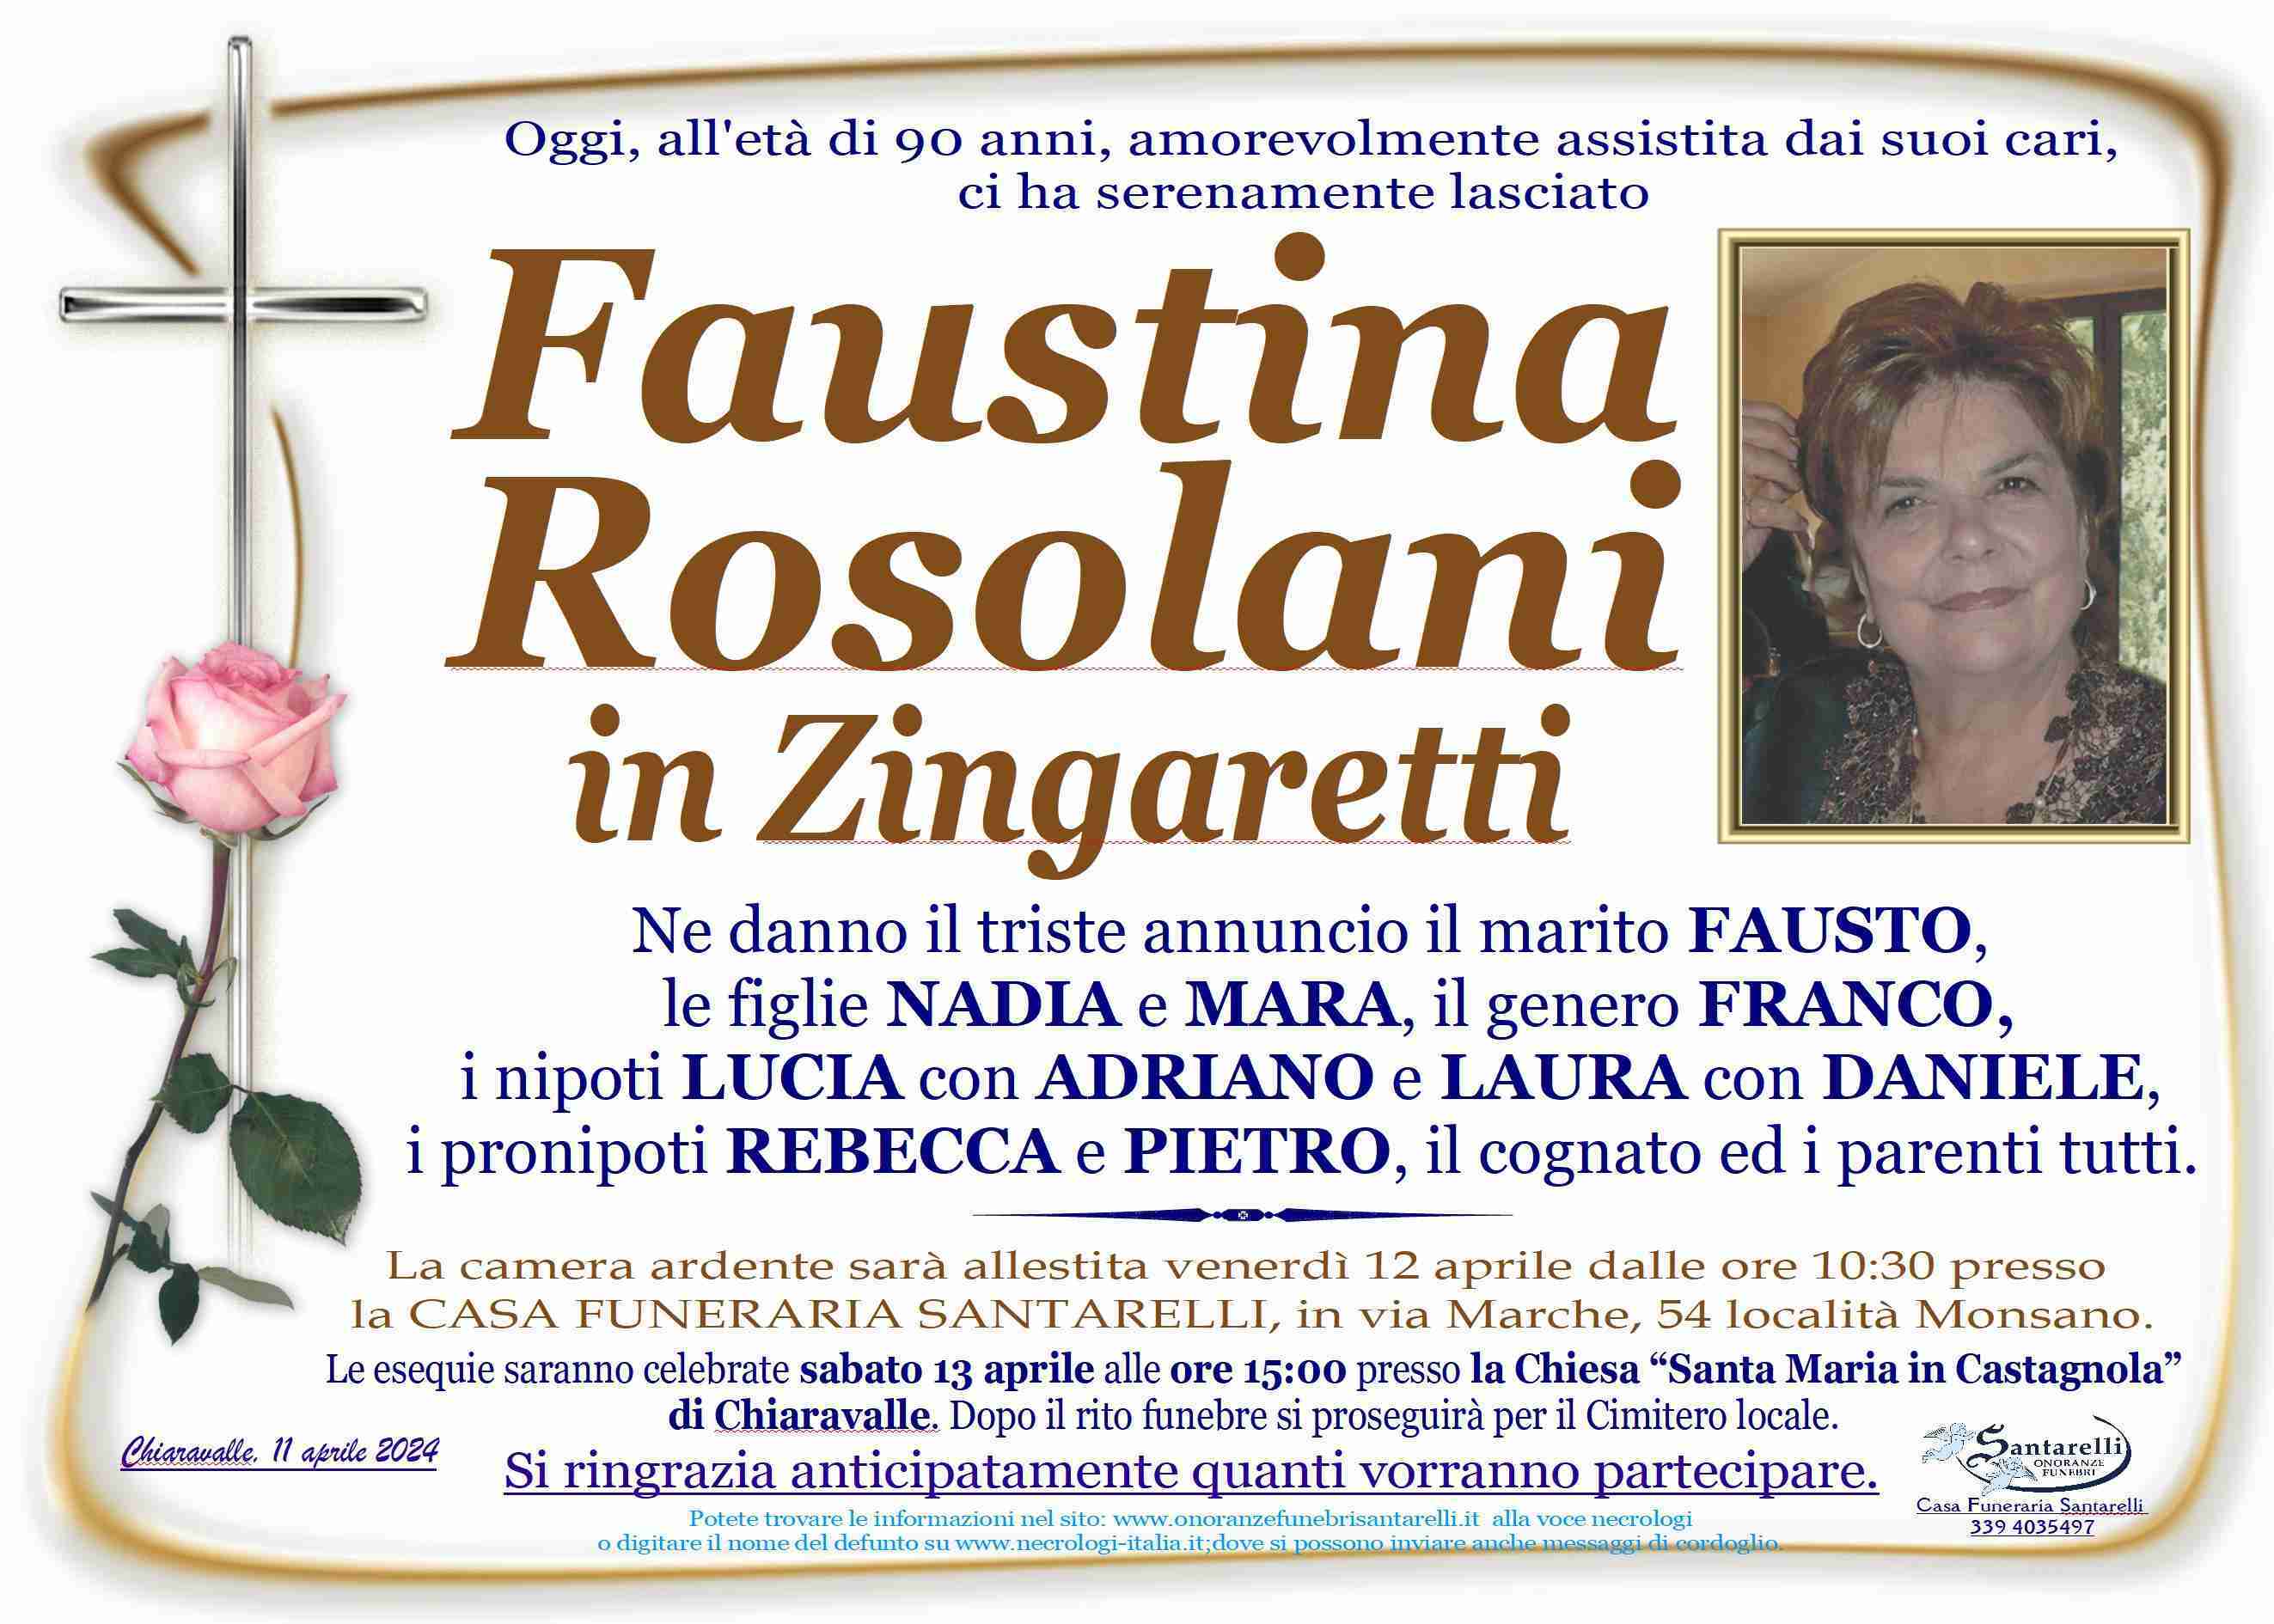 Faustina Rosolani